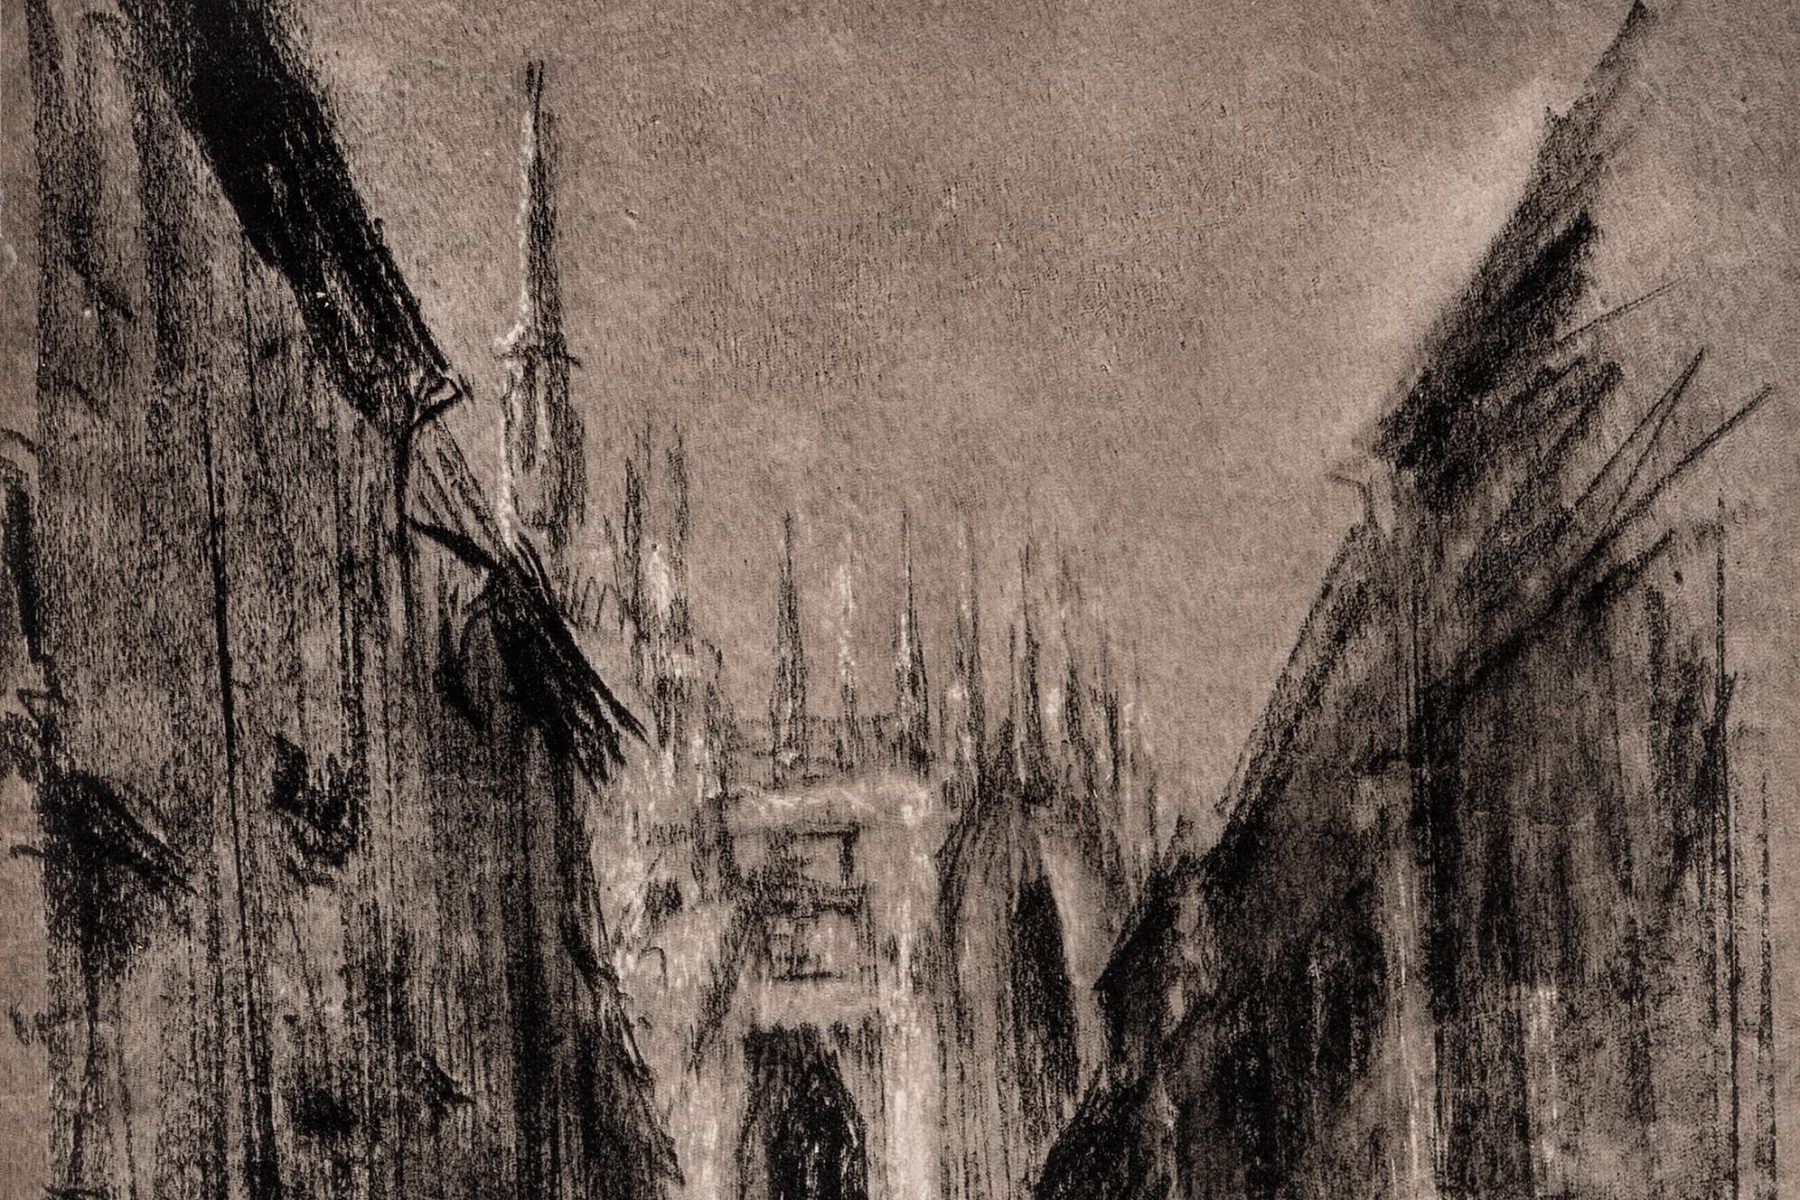 Druckgrafik von Max Liebermann mit Ansicht einer Stadt.